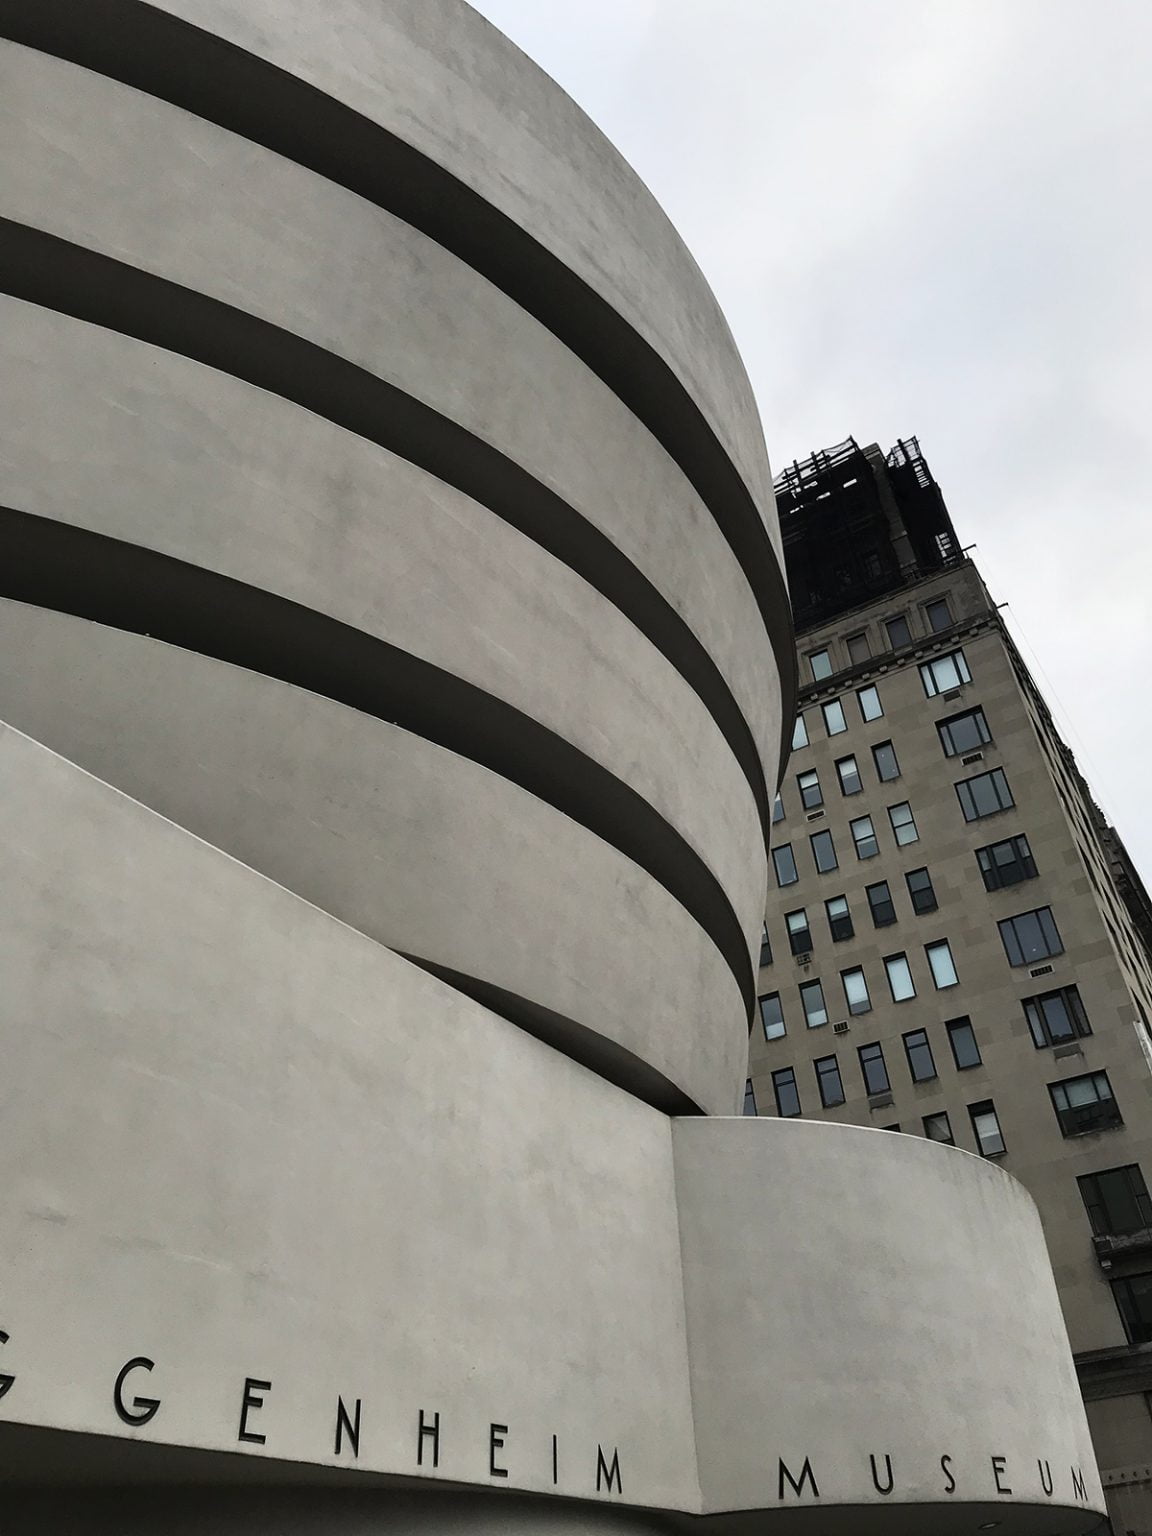 abreu-digital-guggennheim-museu-nova-york-noticias-arquitetura-360-graus-foto-patricia-abreu